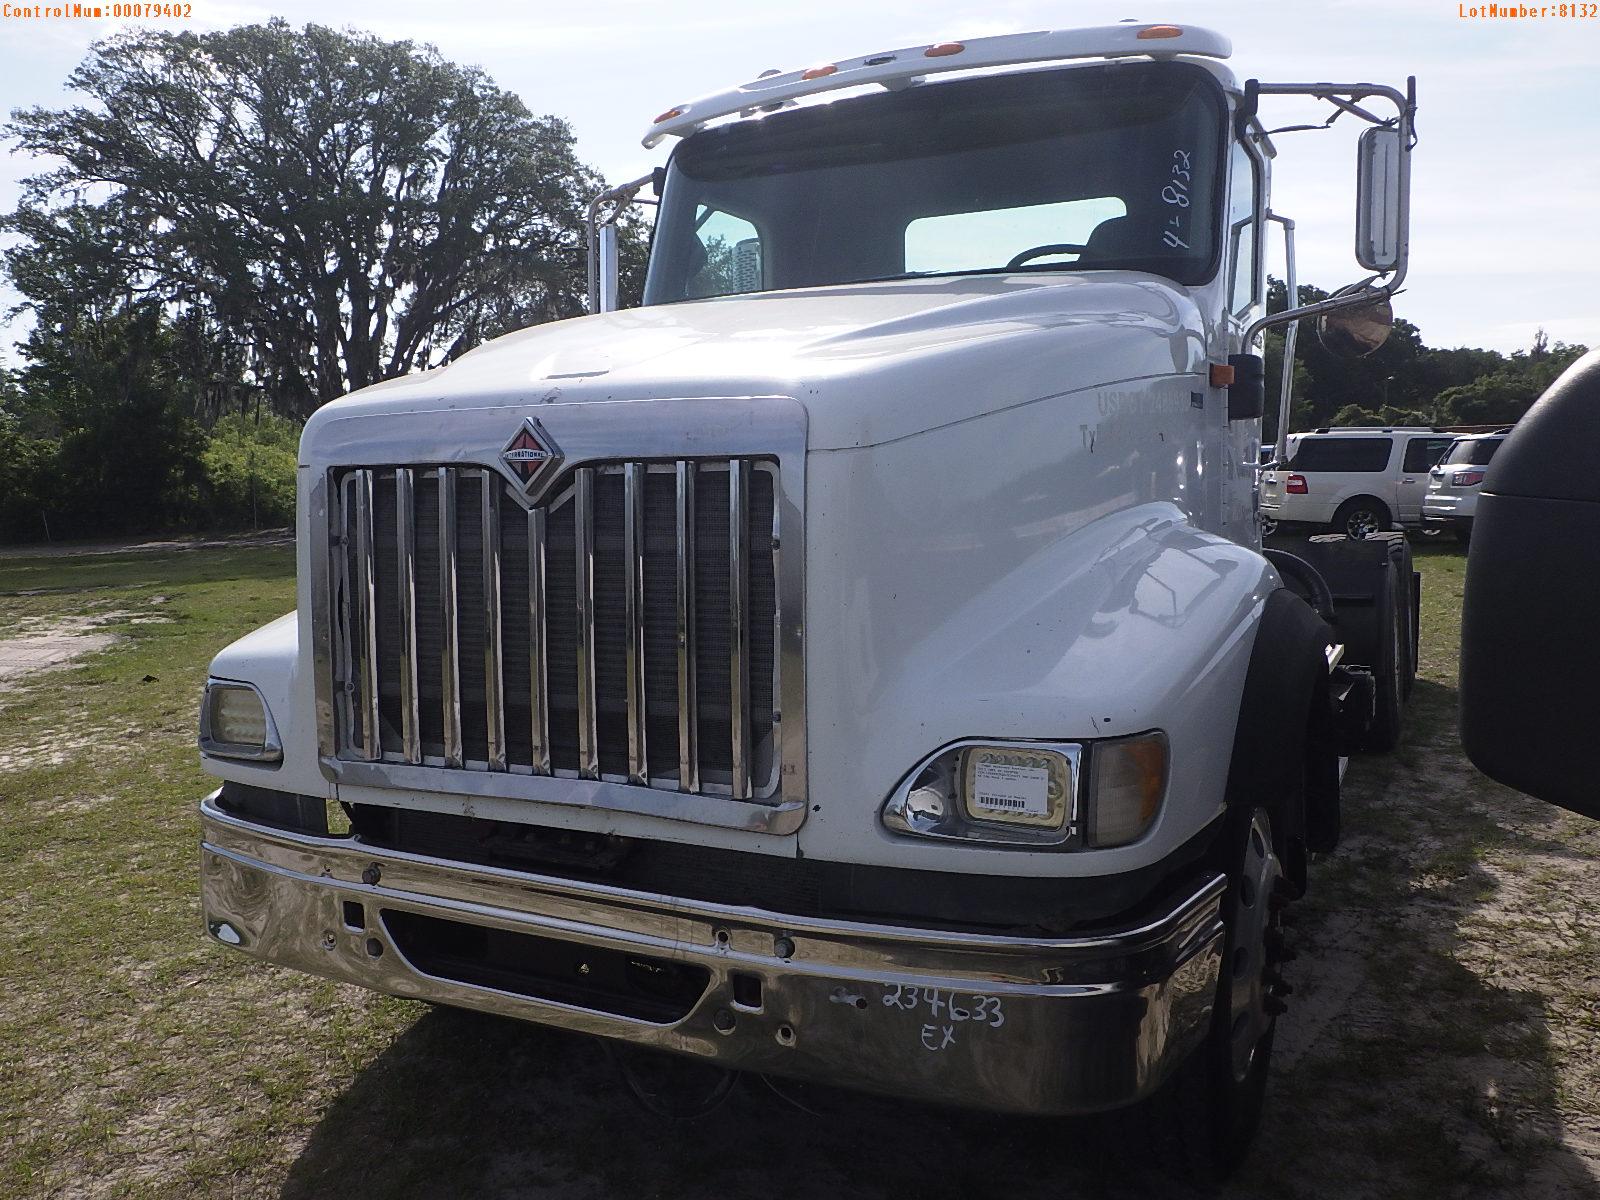 5-08117 (Trucks-Tractor)  Seller:Private/Dealer 2013 INTL PAYSTAR